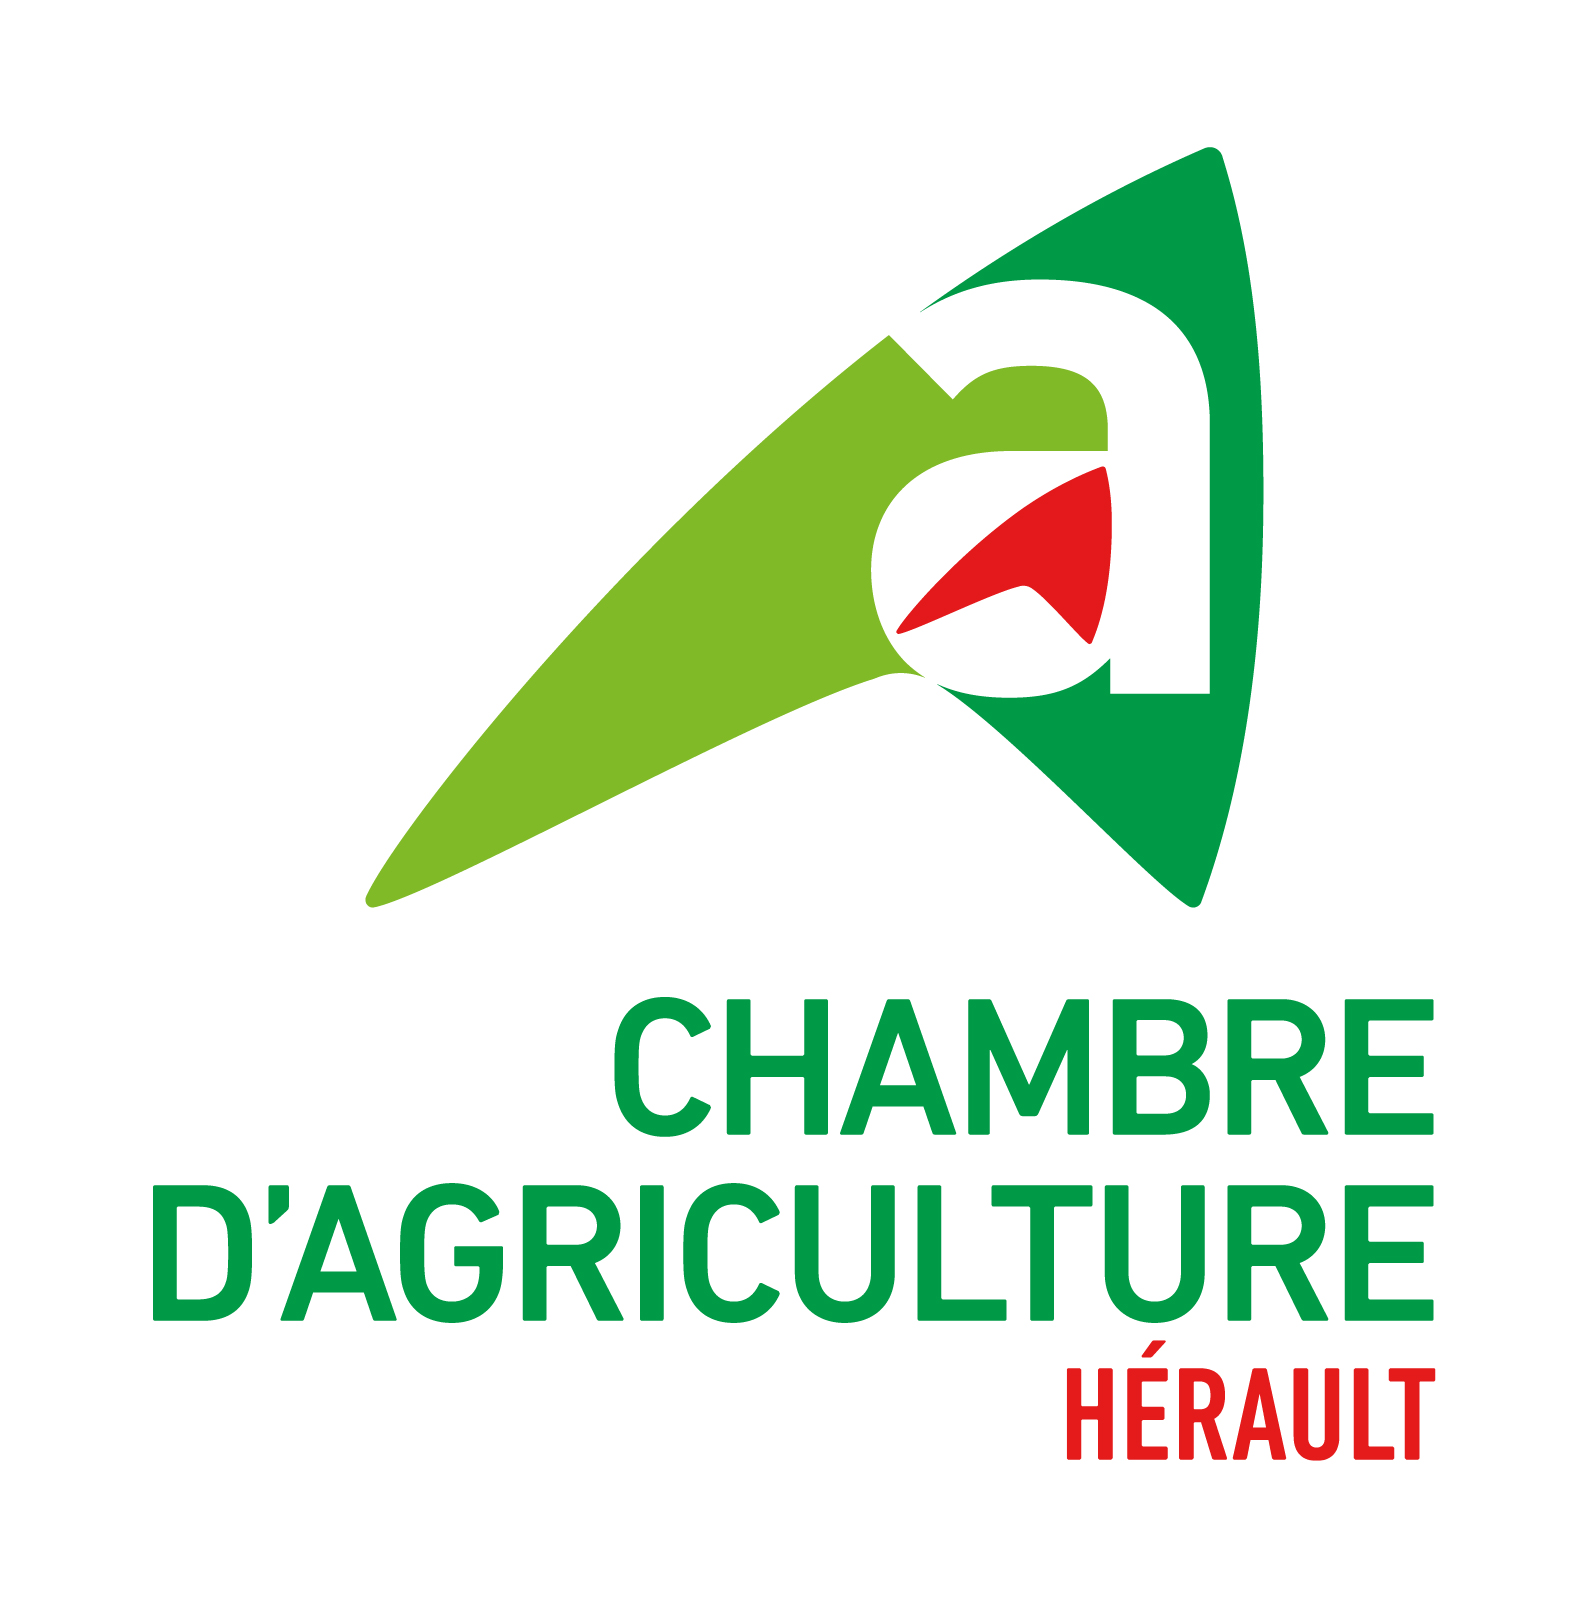 Chambre d'agriculture de l'Hérault, retour à la page d'accueil